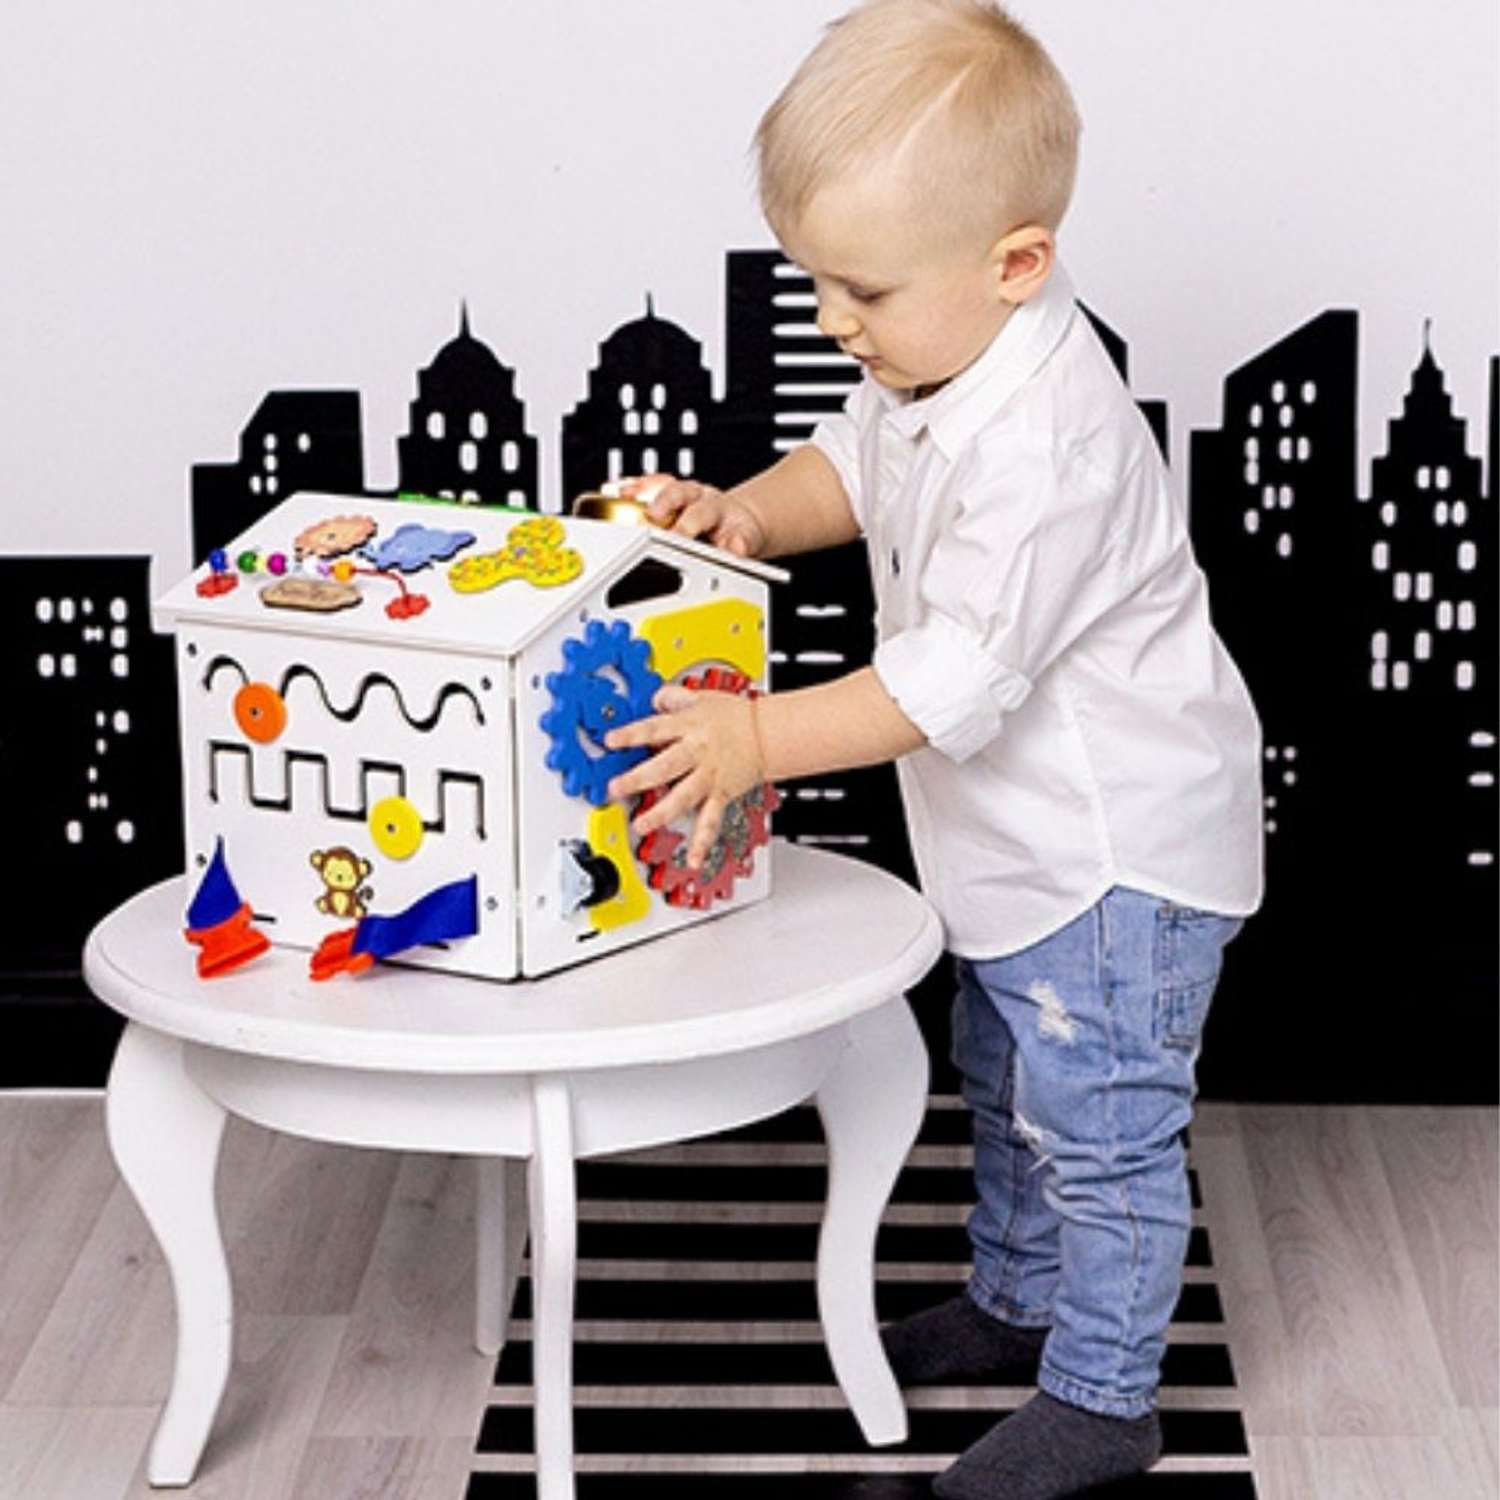 Бизиборд KimToys Домик со светом Малышок игрушка для девочек и мальчиков - фото 10